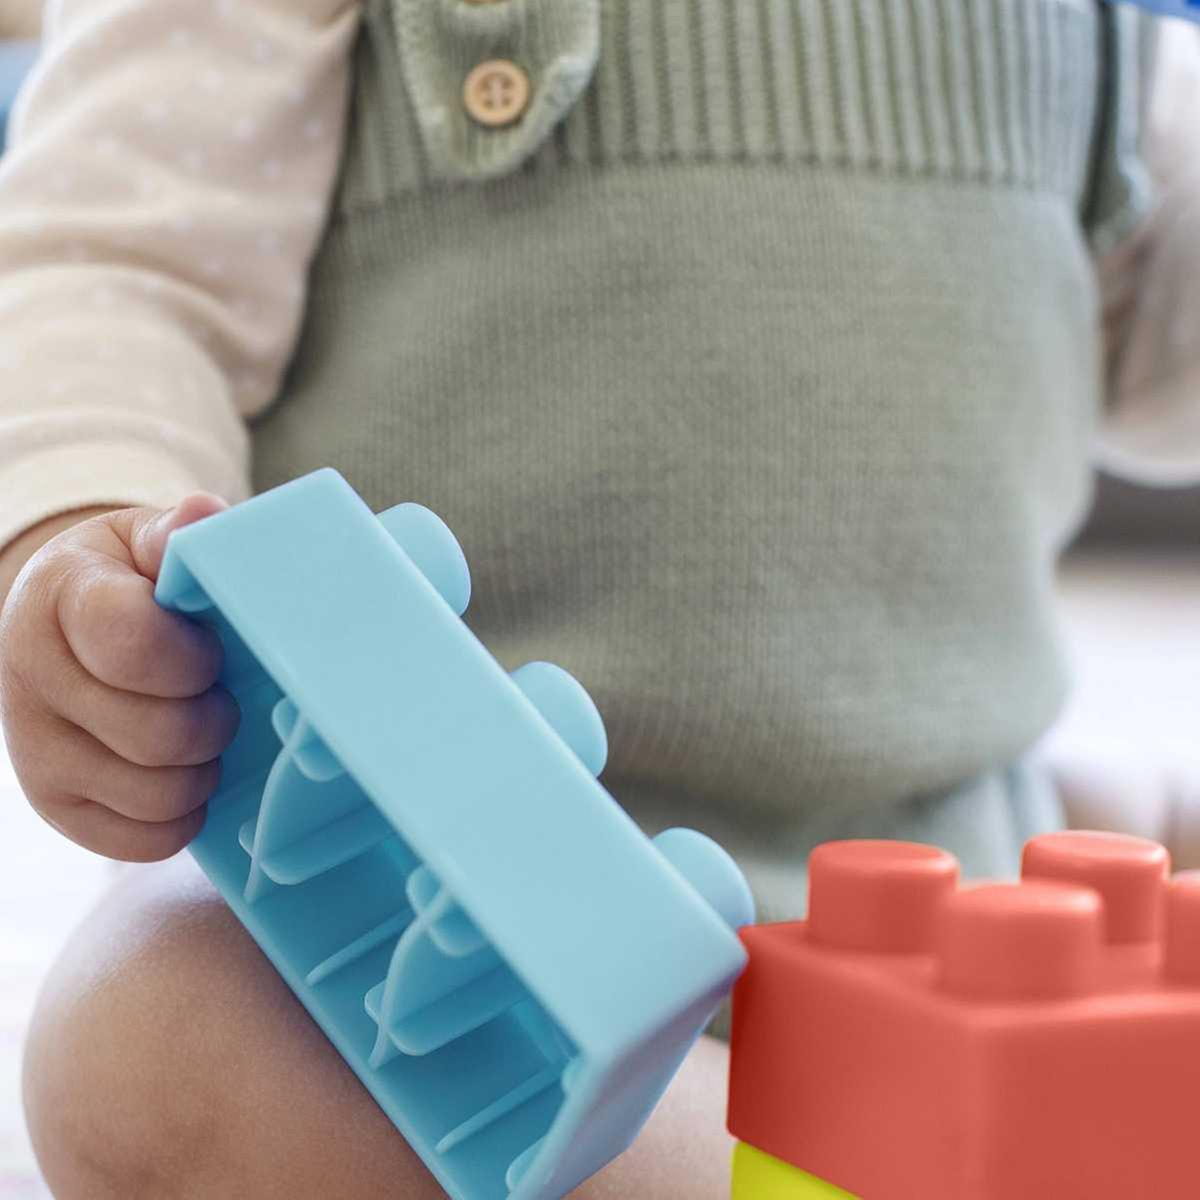 Blocos de Construção Brinquedo Educativo p/ Bebê em Silicone | 0-36 Meses |  Atenna Baby Shop